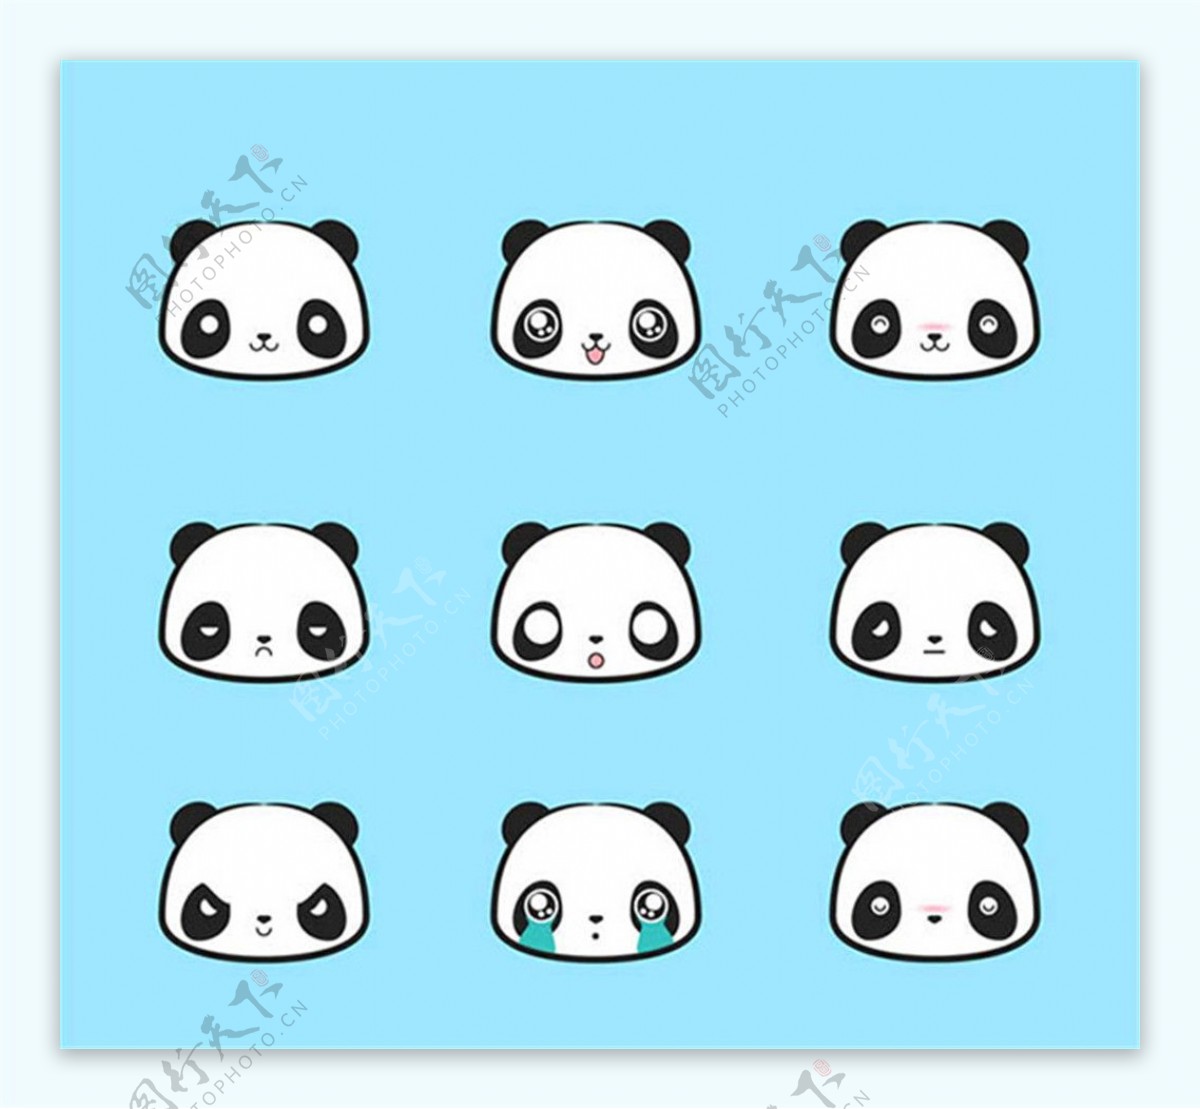 可爱熊猫头像矢量